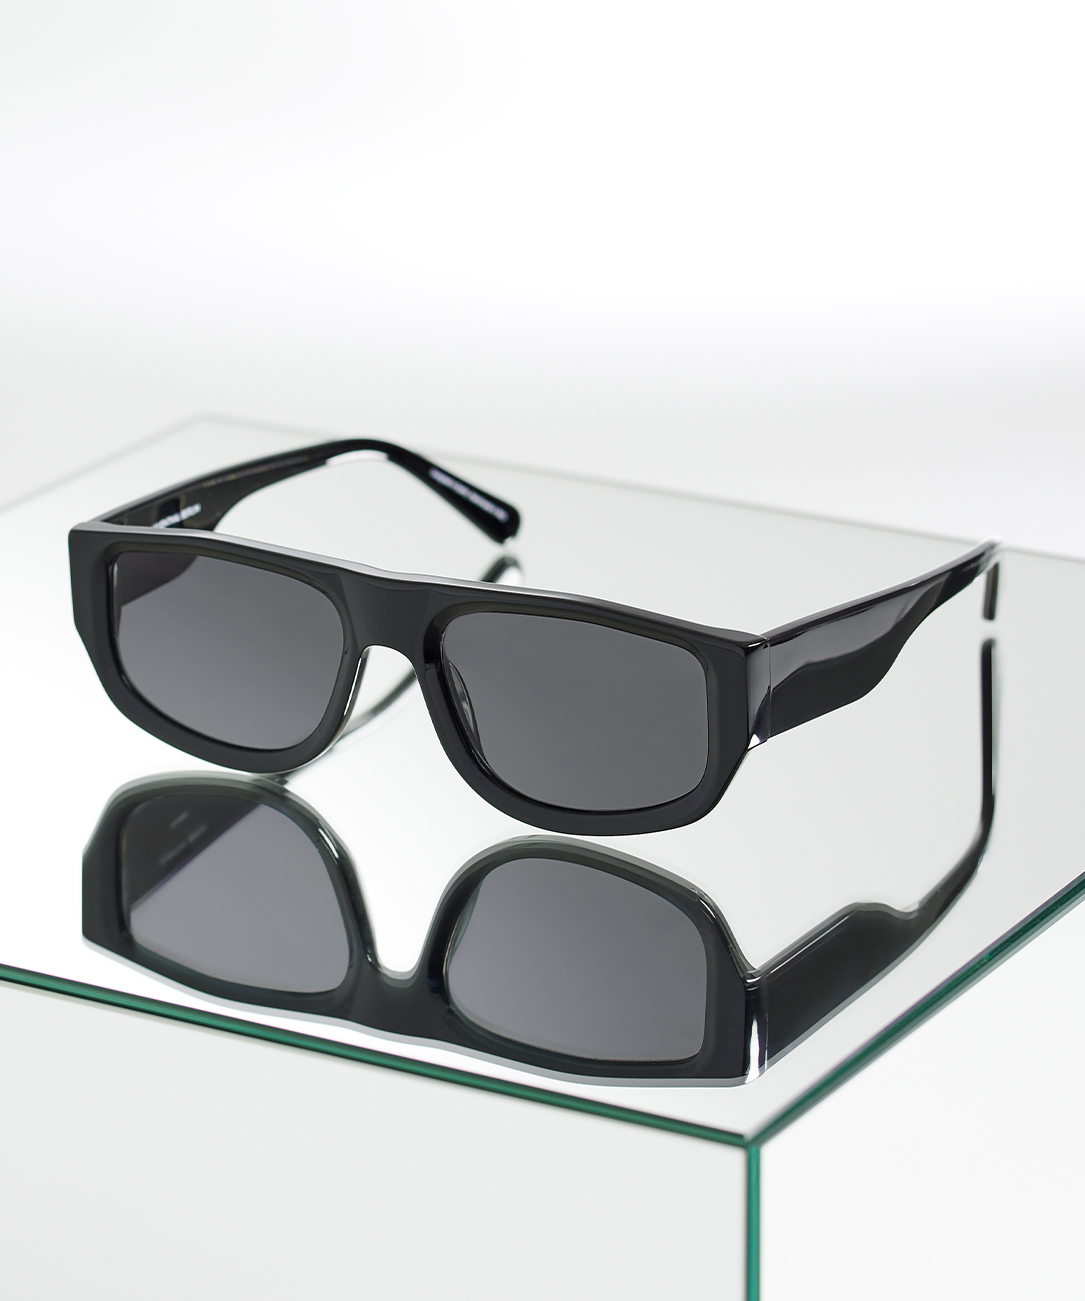 Sonnenbrille Nightcore Black | Sonnenbrillen Lilienthal | Alle Preisgekrönte Designs - Gray | Sonnenbrillen Berlin